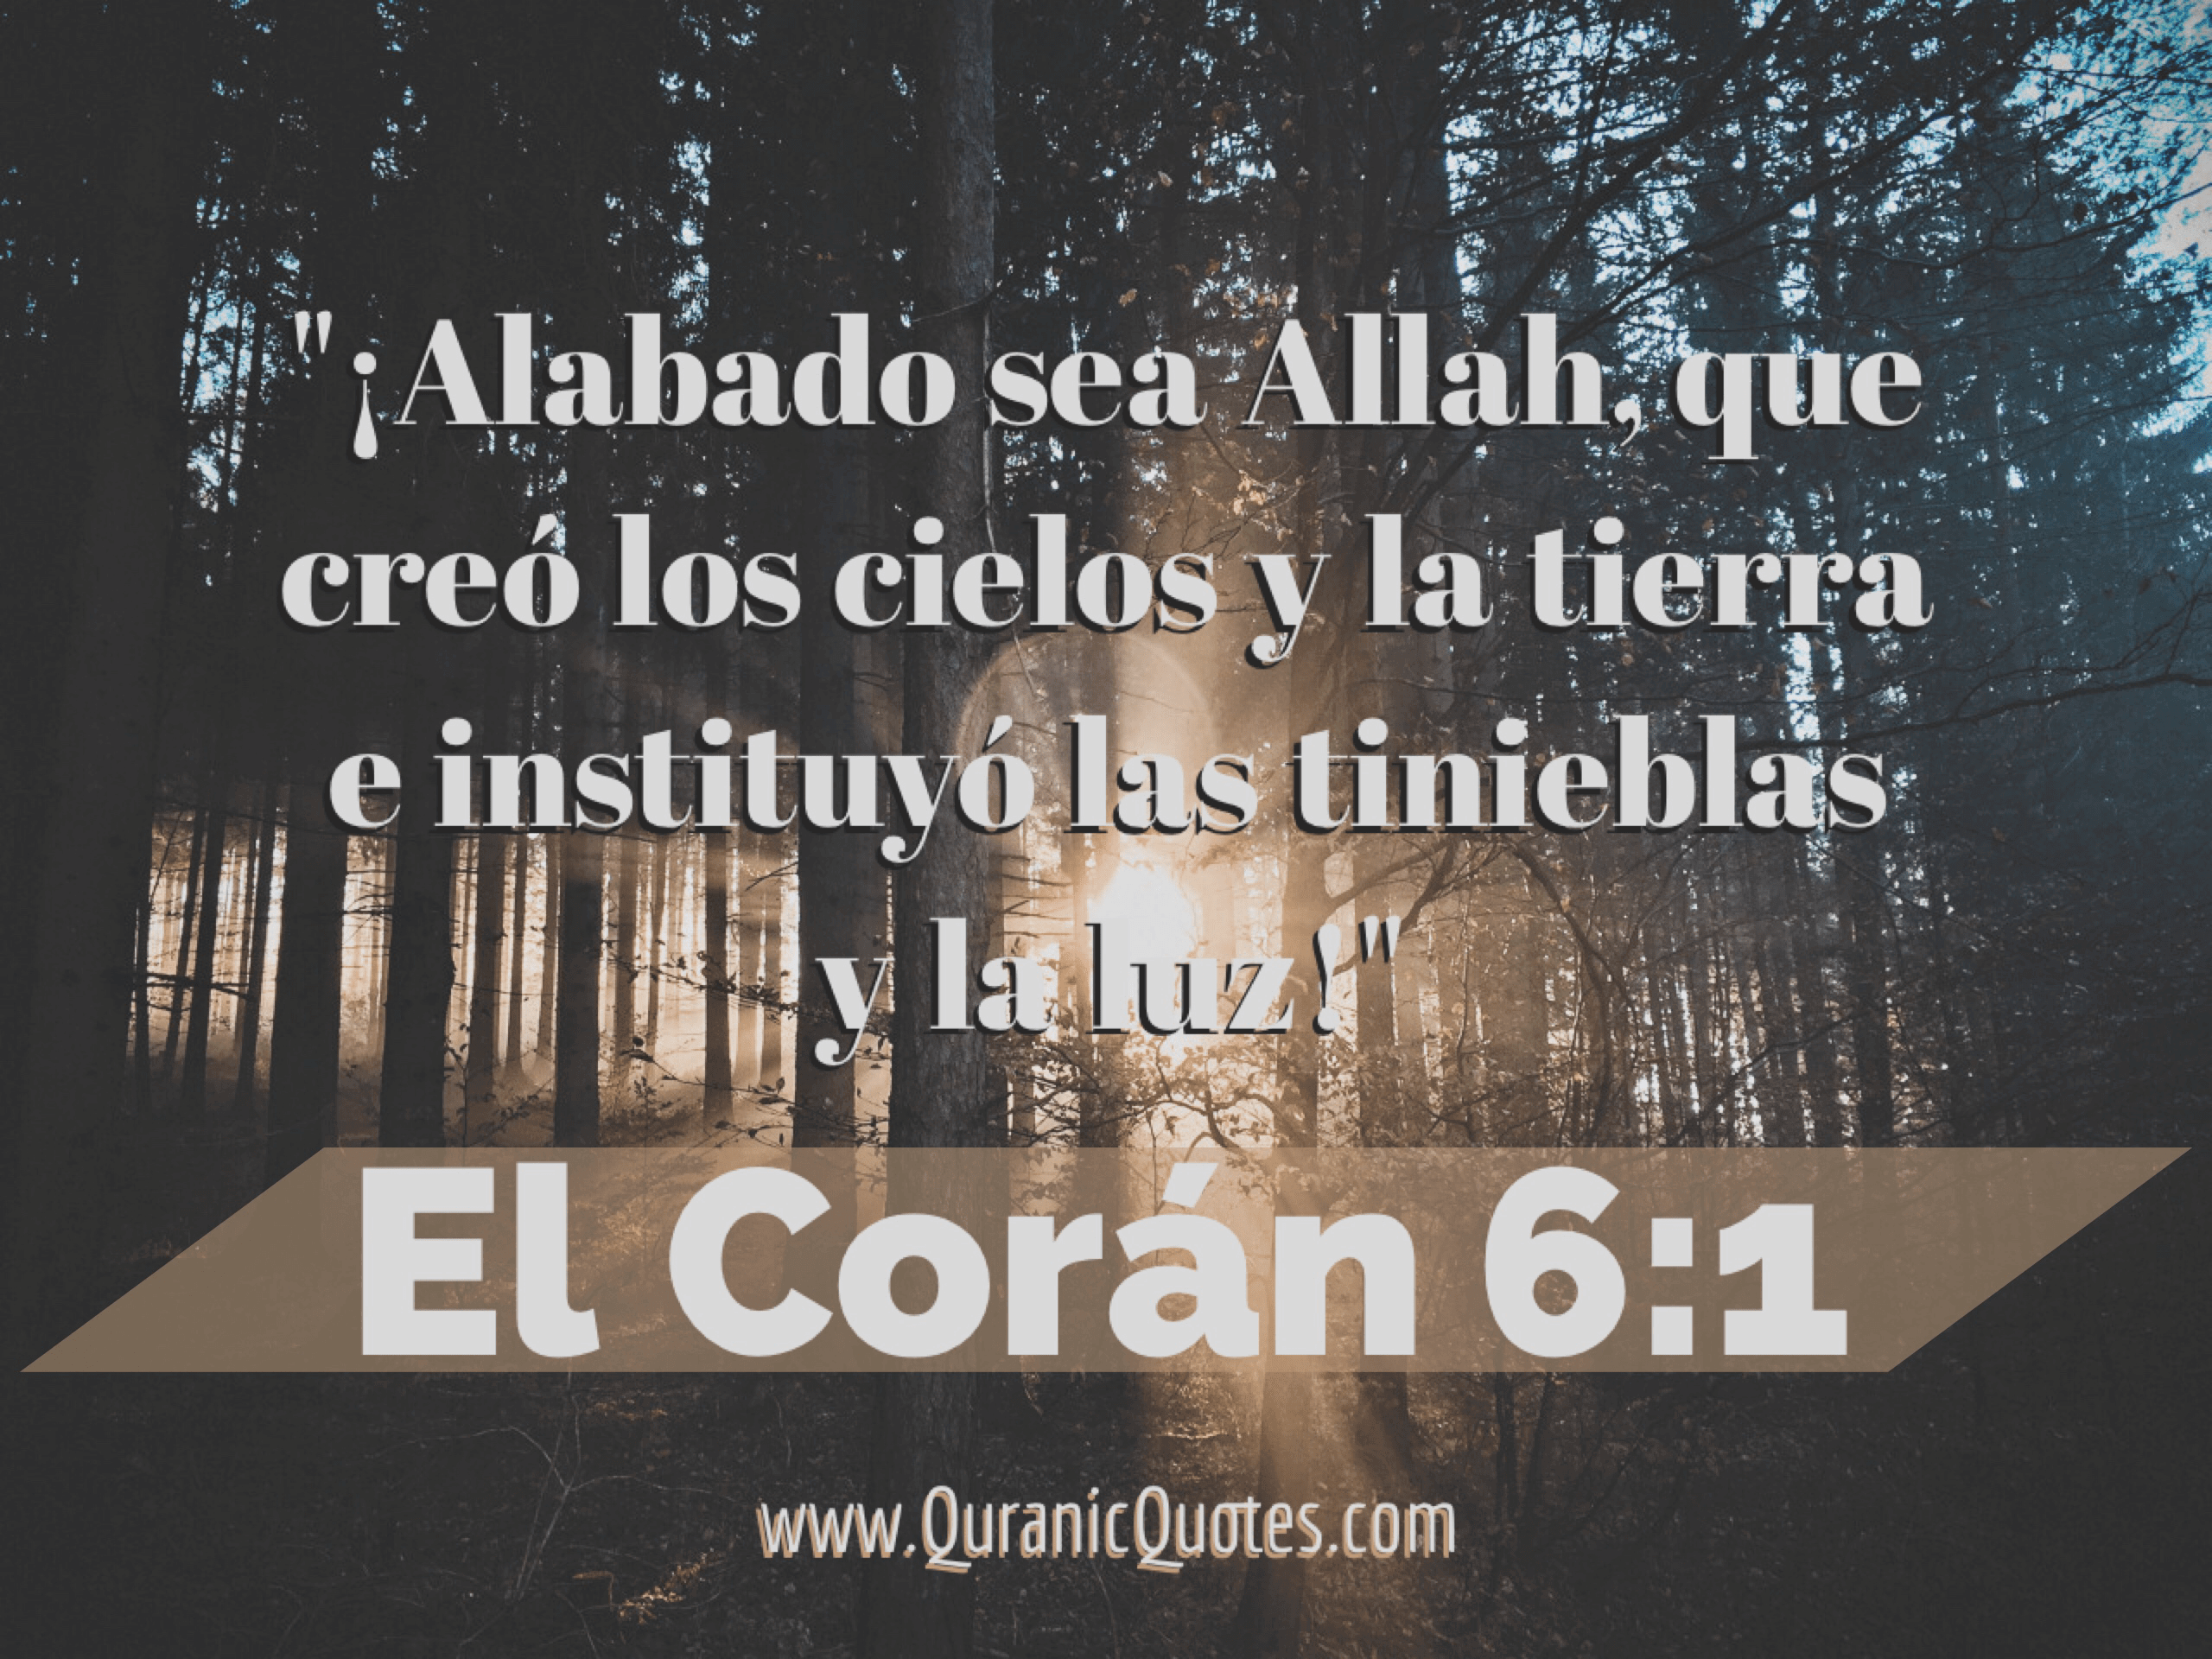 Quranic Quotes Español #77